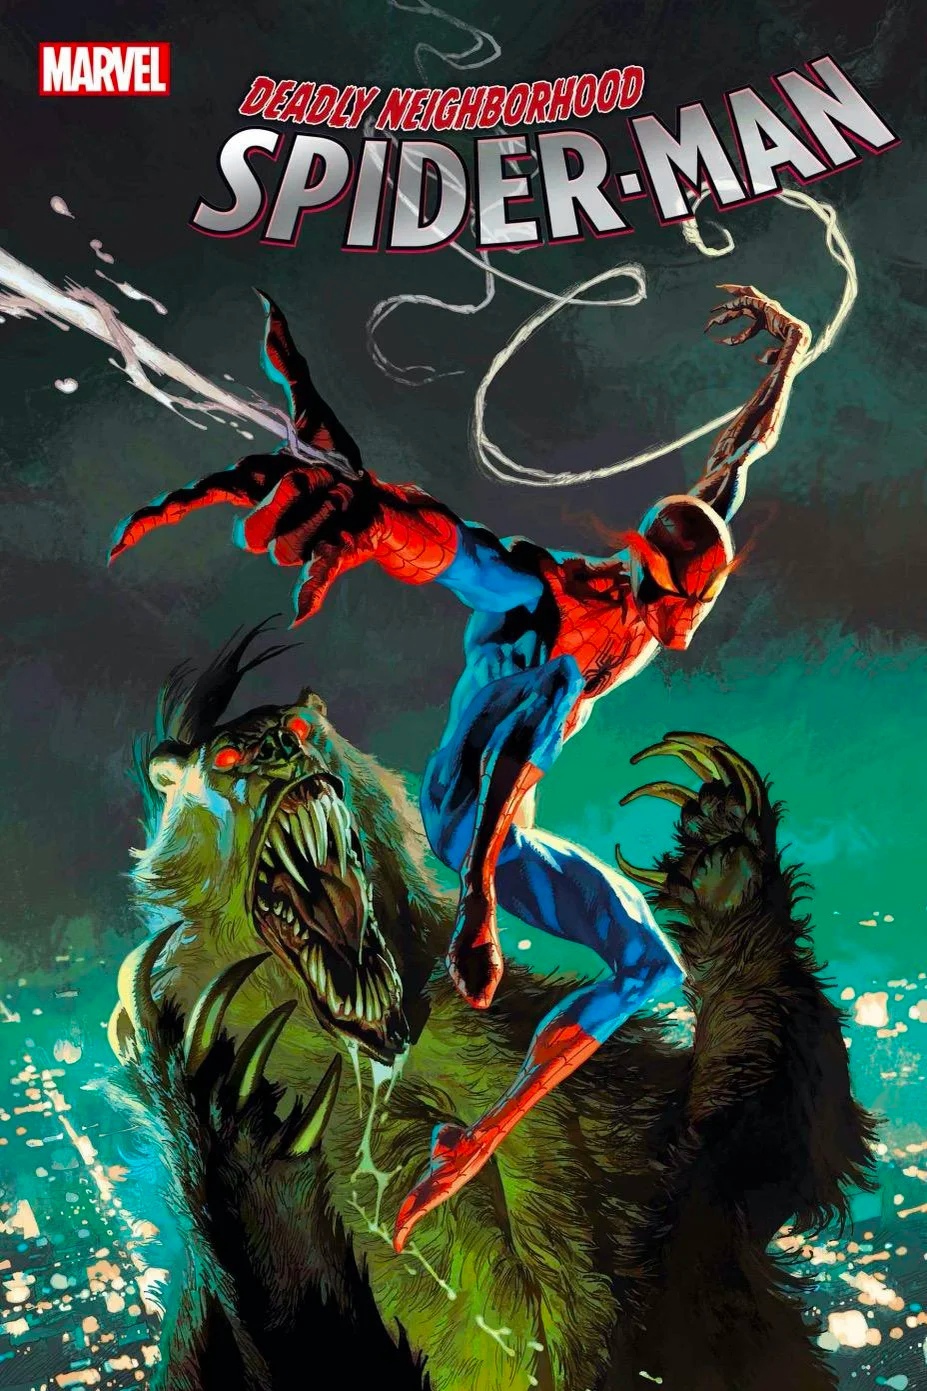 Marvel показали первый взгляд на хоррор «Смертельный сосед Человек-паук»